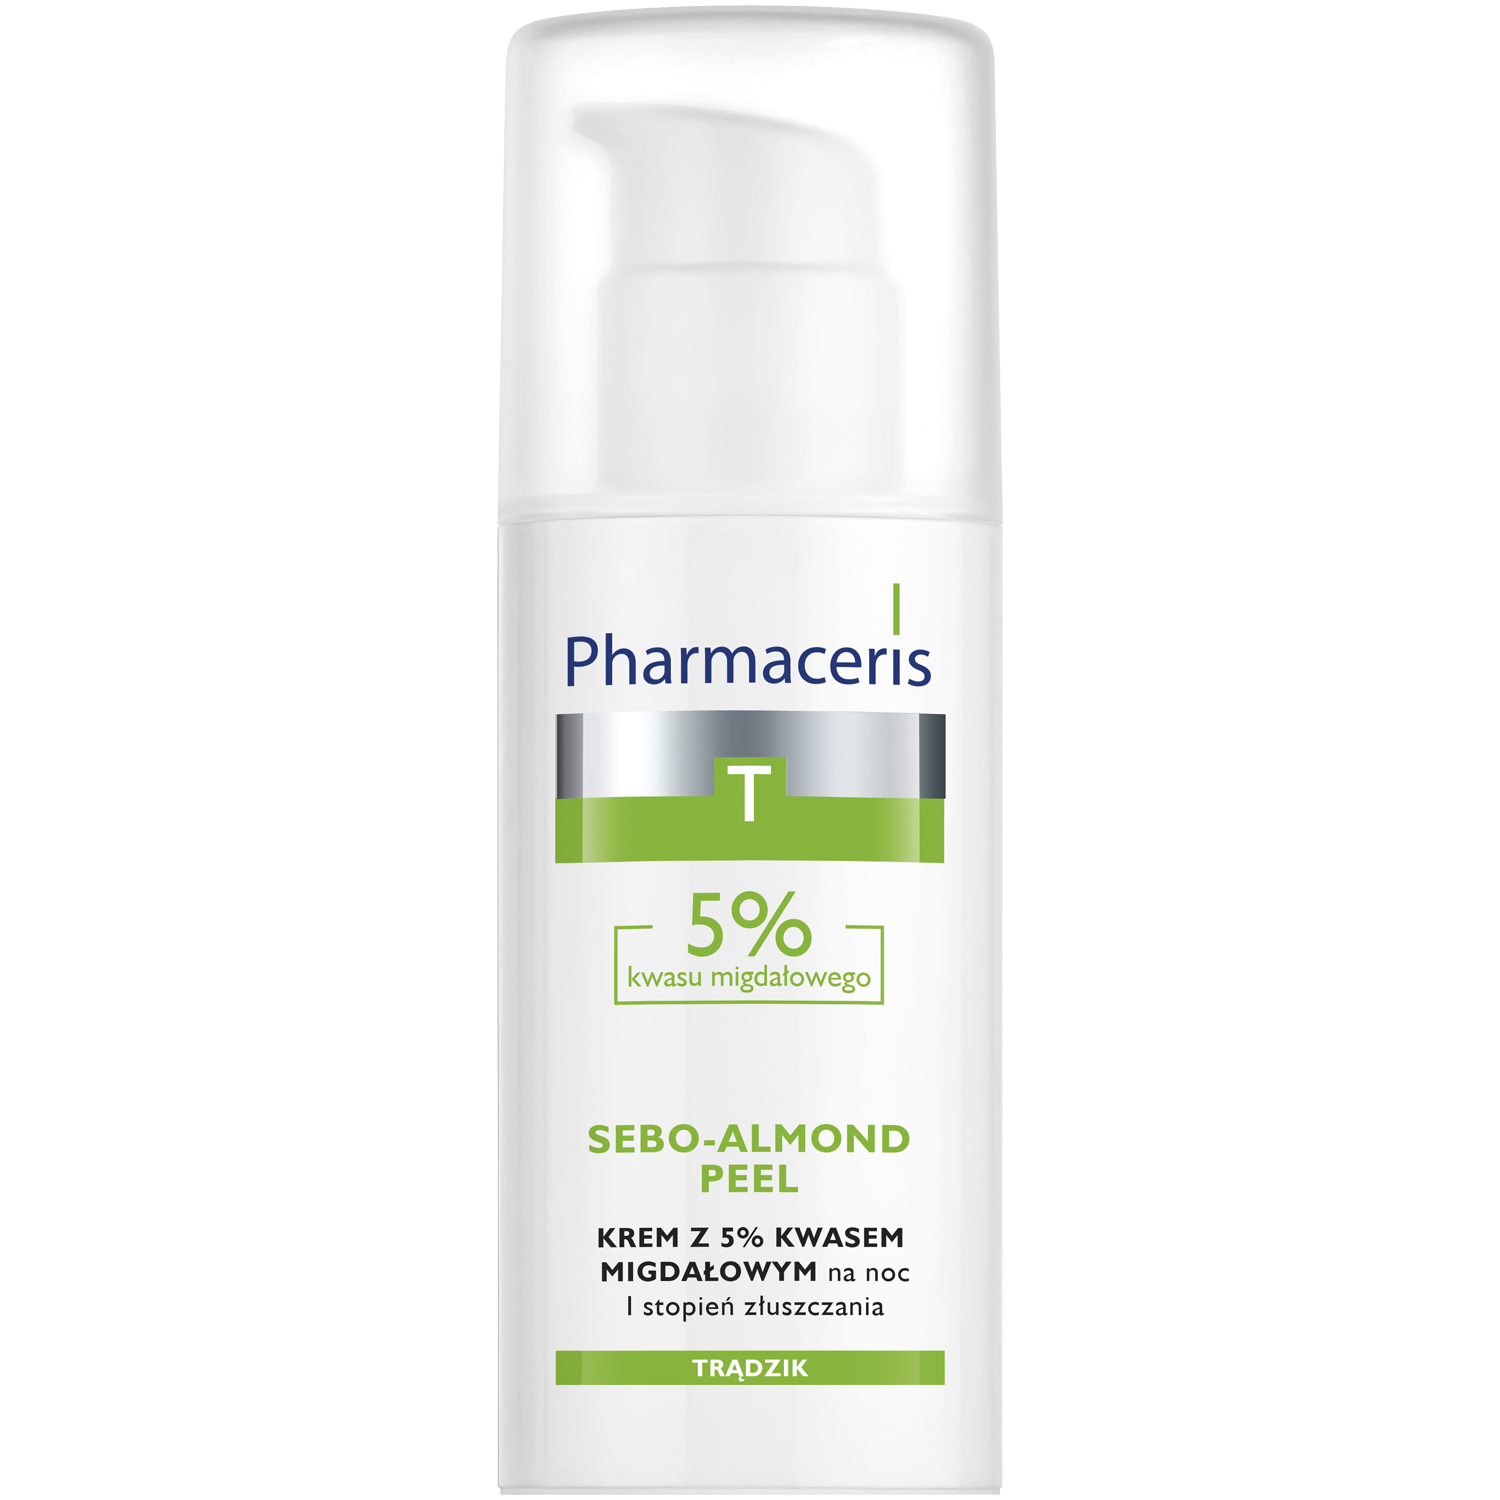 Pharmaceris T Sebo-Almond Peel 5% ночной крем с 5% миндальной кислотой, 1 степень отшелушивания, 50 мл